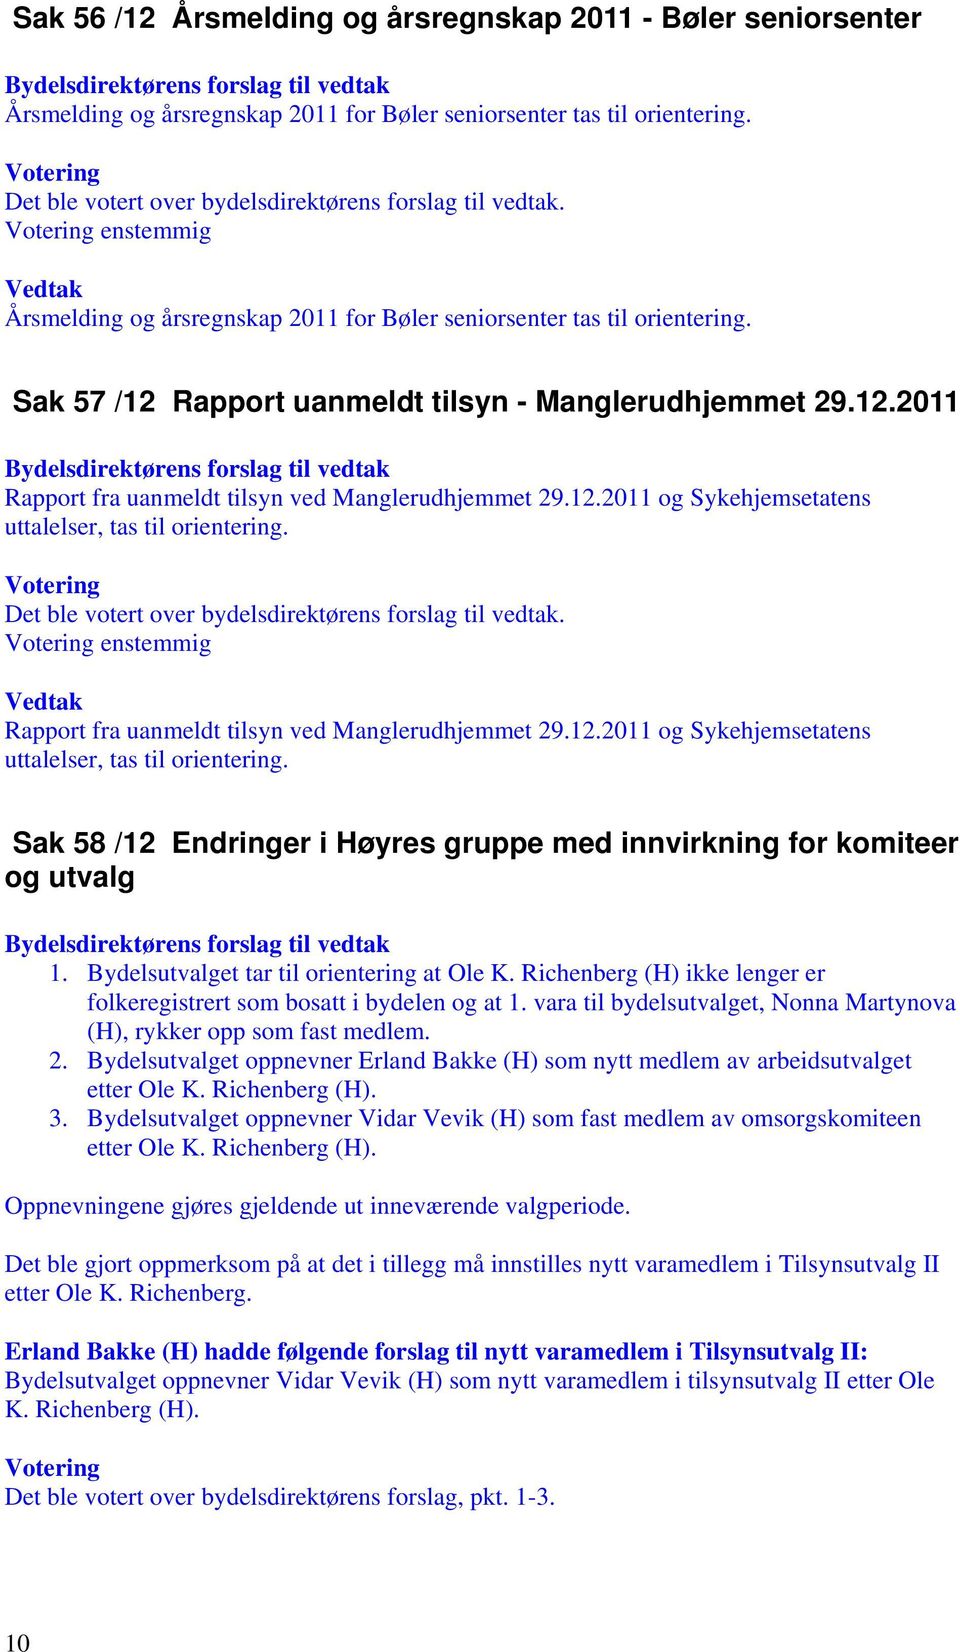 Rapport fra uanmeldt tilsyn ved Manglerudhjemmet 29.12.2011 og Sykehjemsetatens uttalelser, tas til orientering. Sak 58 /12 Endringer i Høyres gruppe med innvirkning for komiteer og utvalg 1.